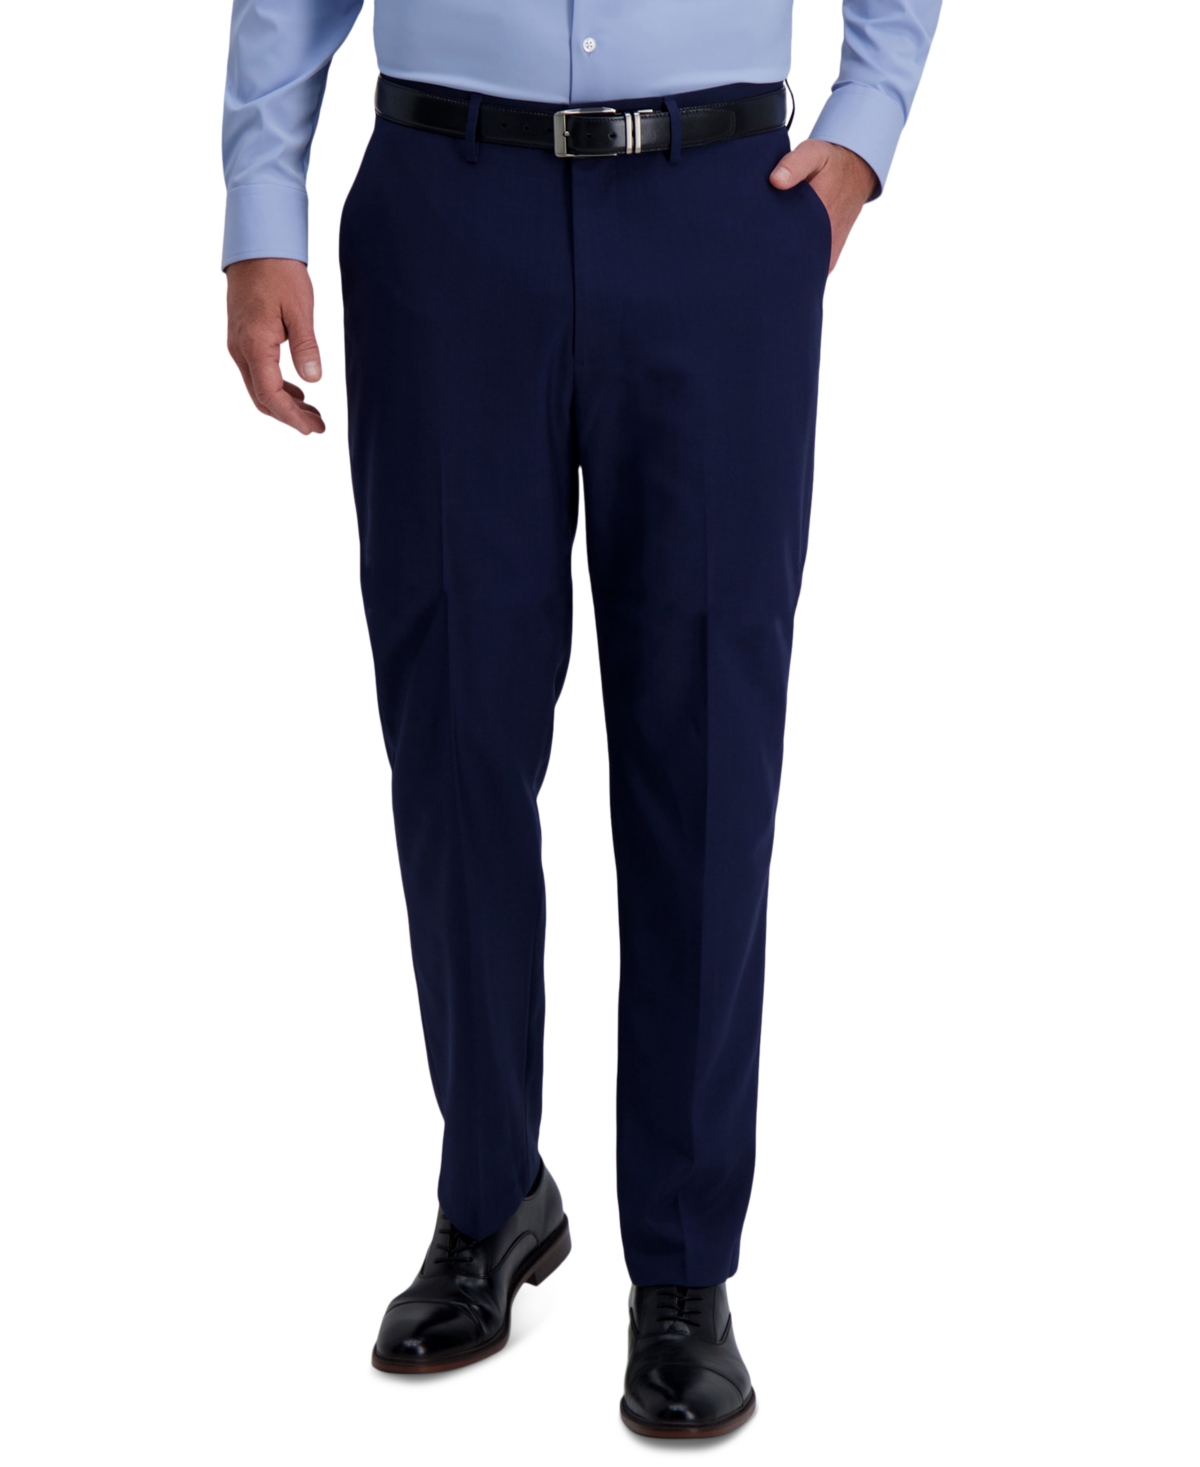 Men's Smart Wash Classic Fit Suit Separates Pants - Black